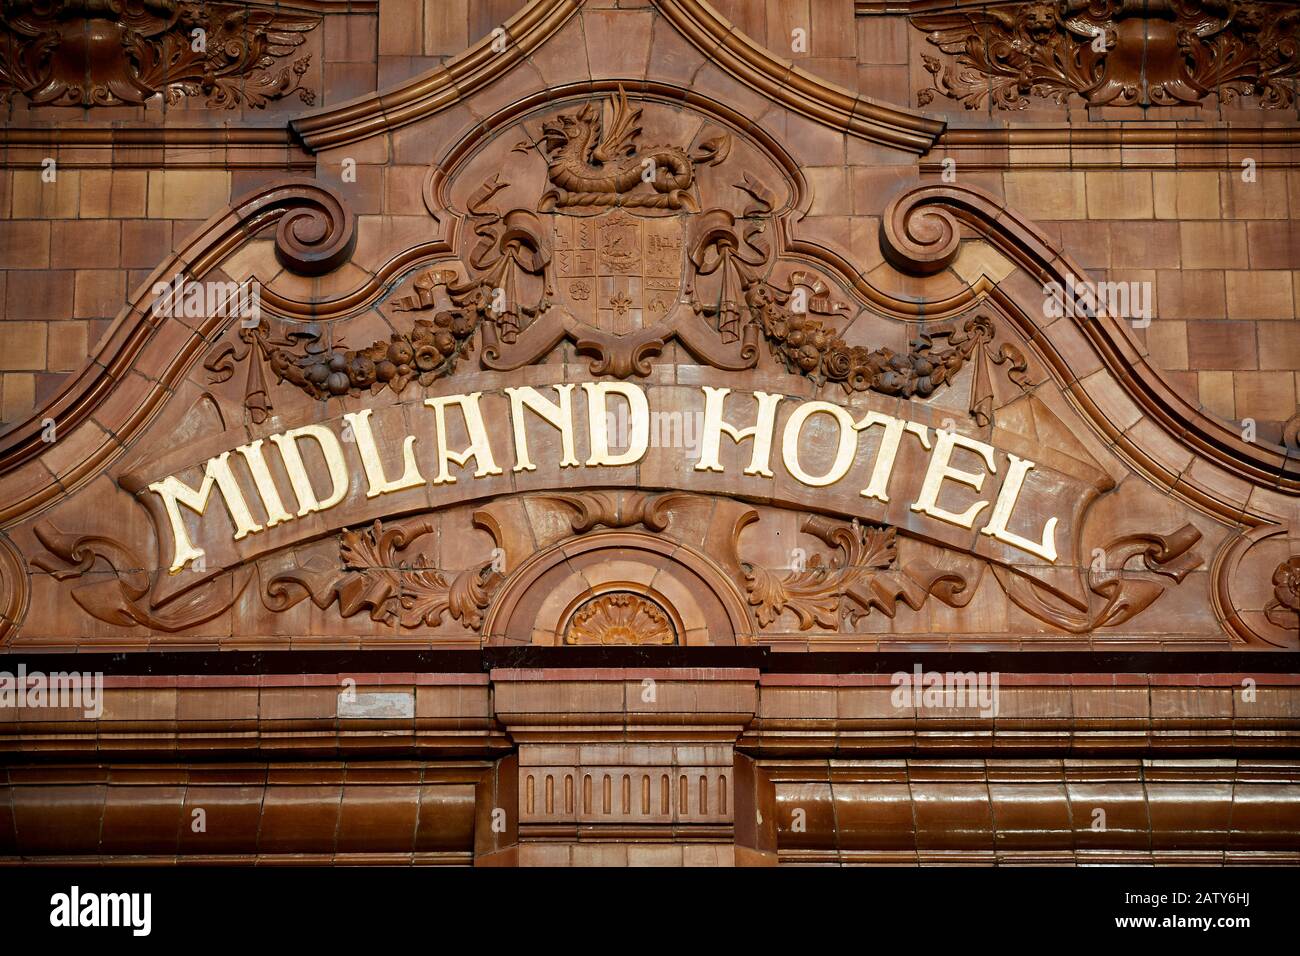 Señal del Manchester Landmark Midland Hotel en el exterior victoriano de azulejos de un hotel ex ferrocarril Foto de stock